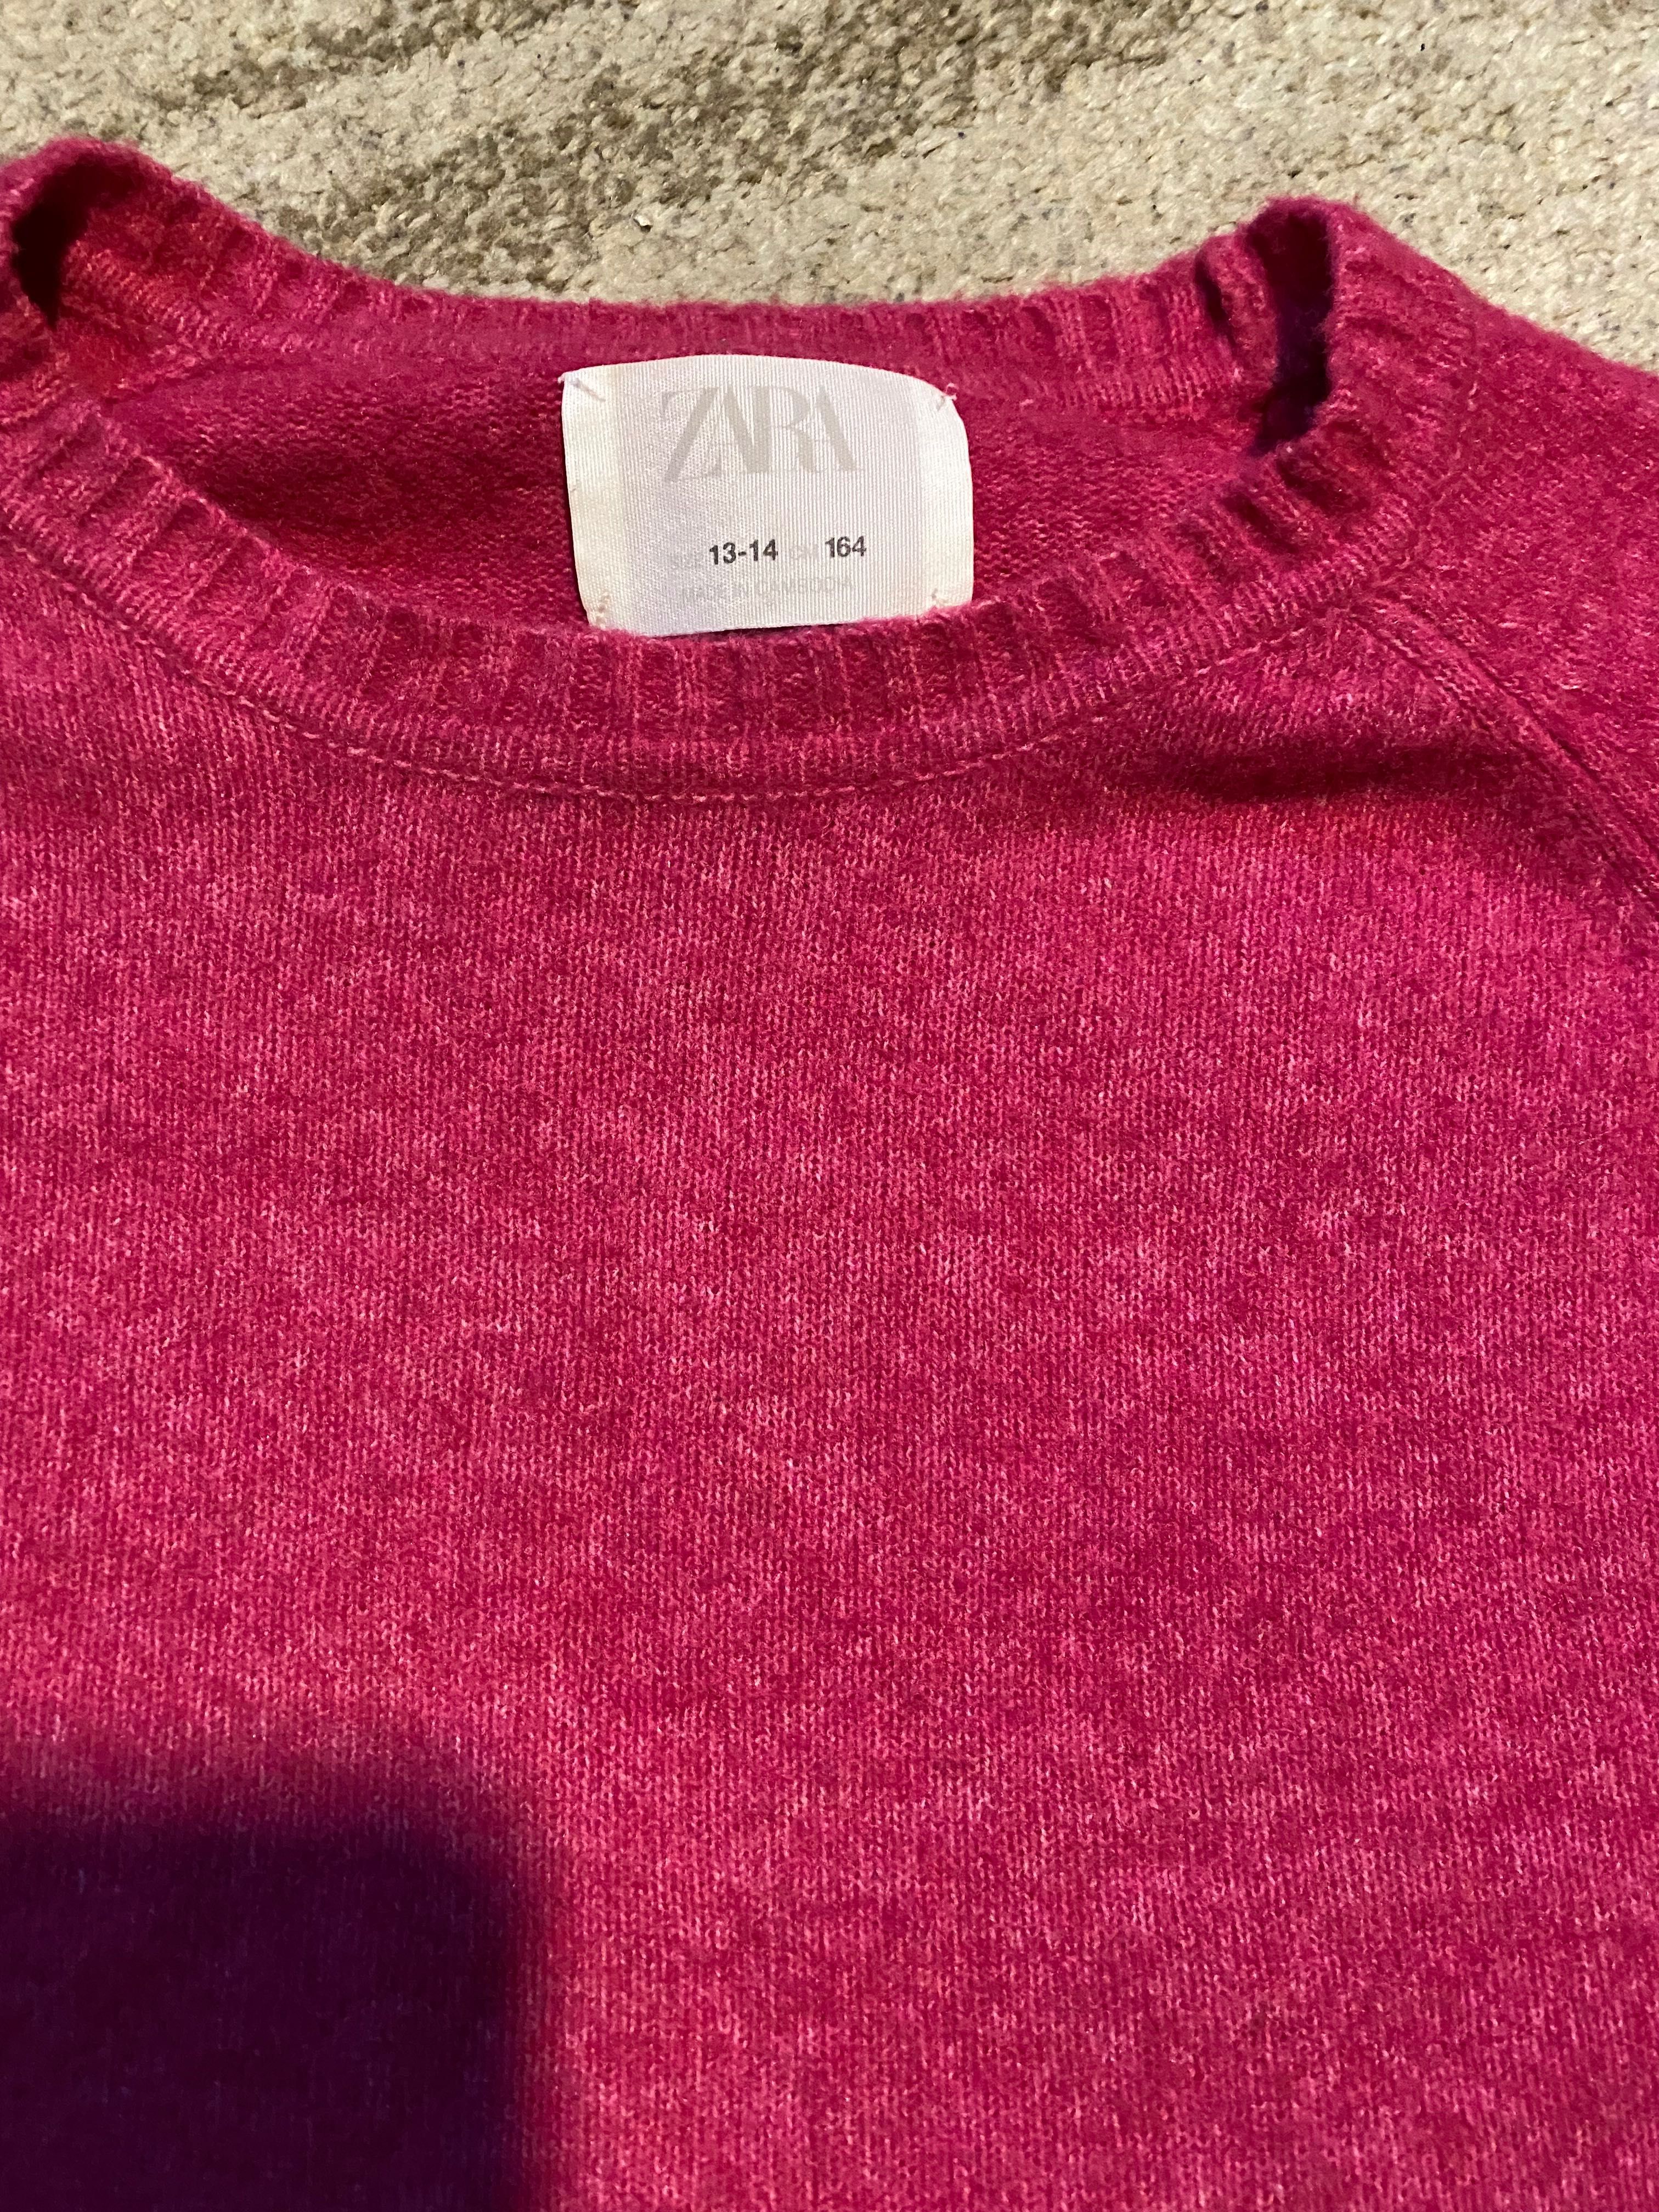 Bluzka Zara różowa rozmiar 164